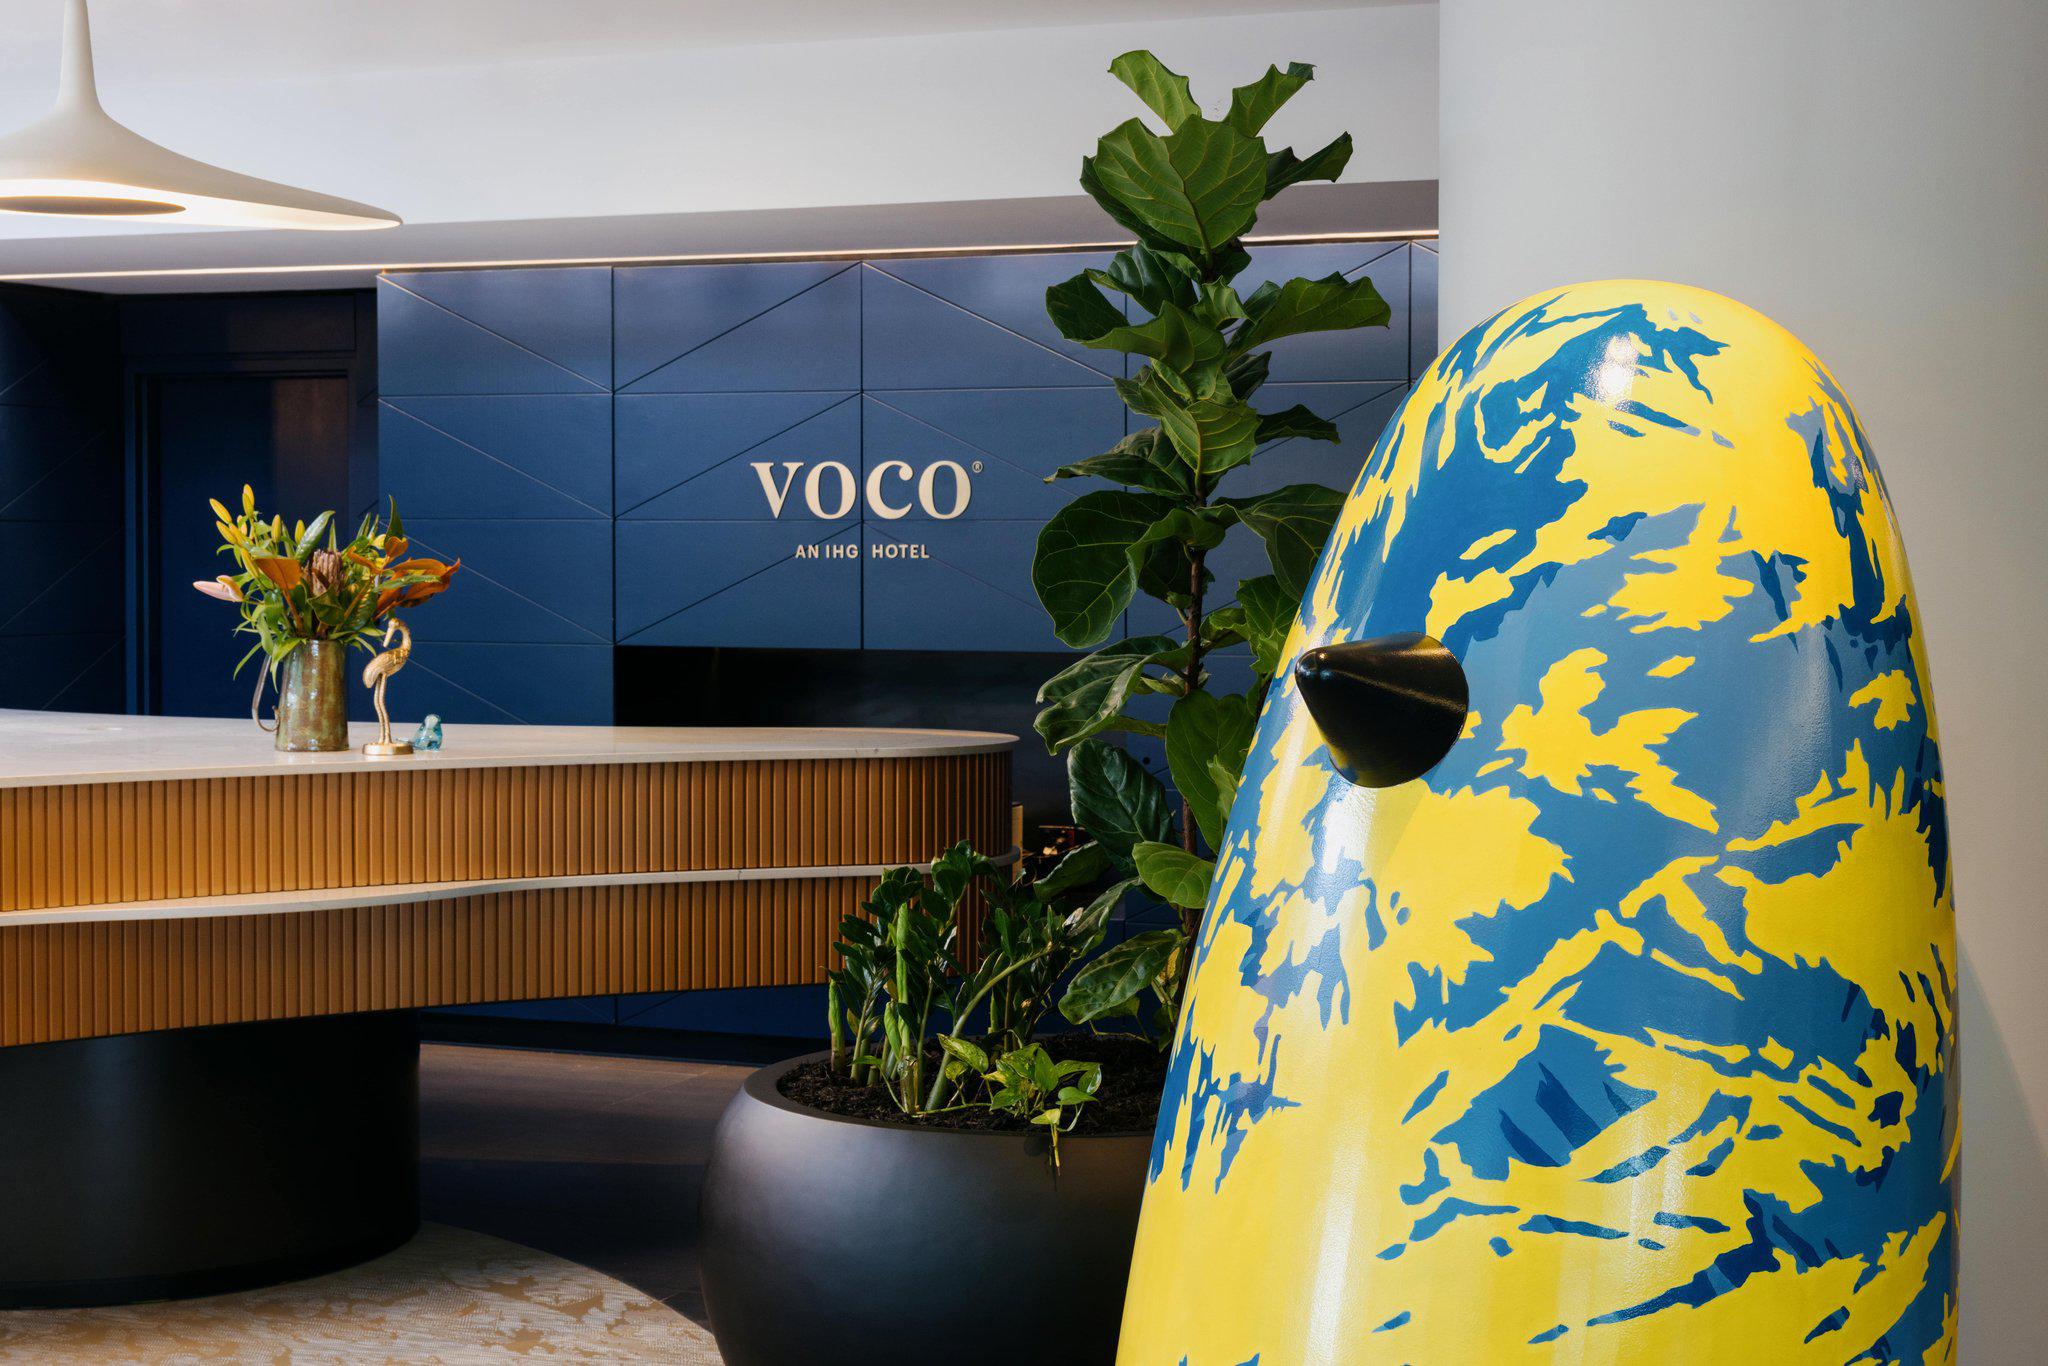 Images voco Brisbane City Centre, an IHG Hotel